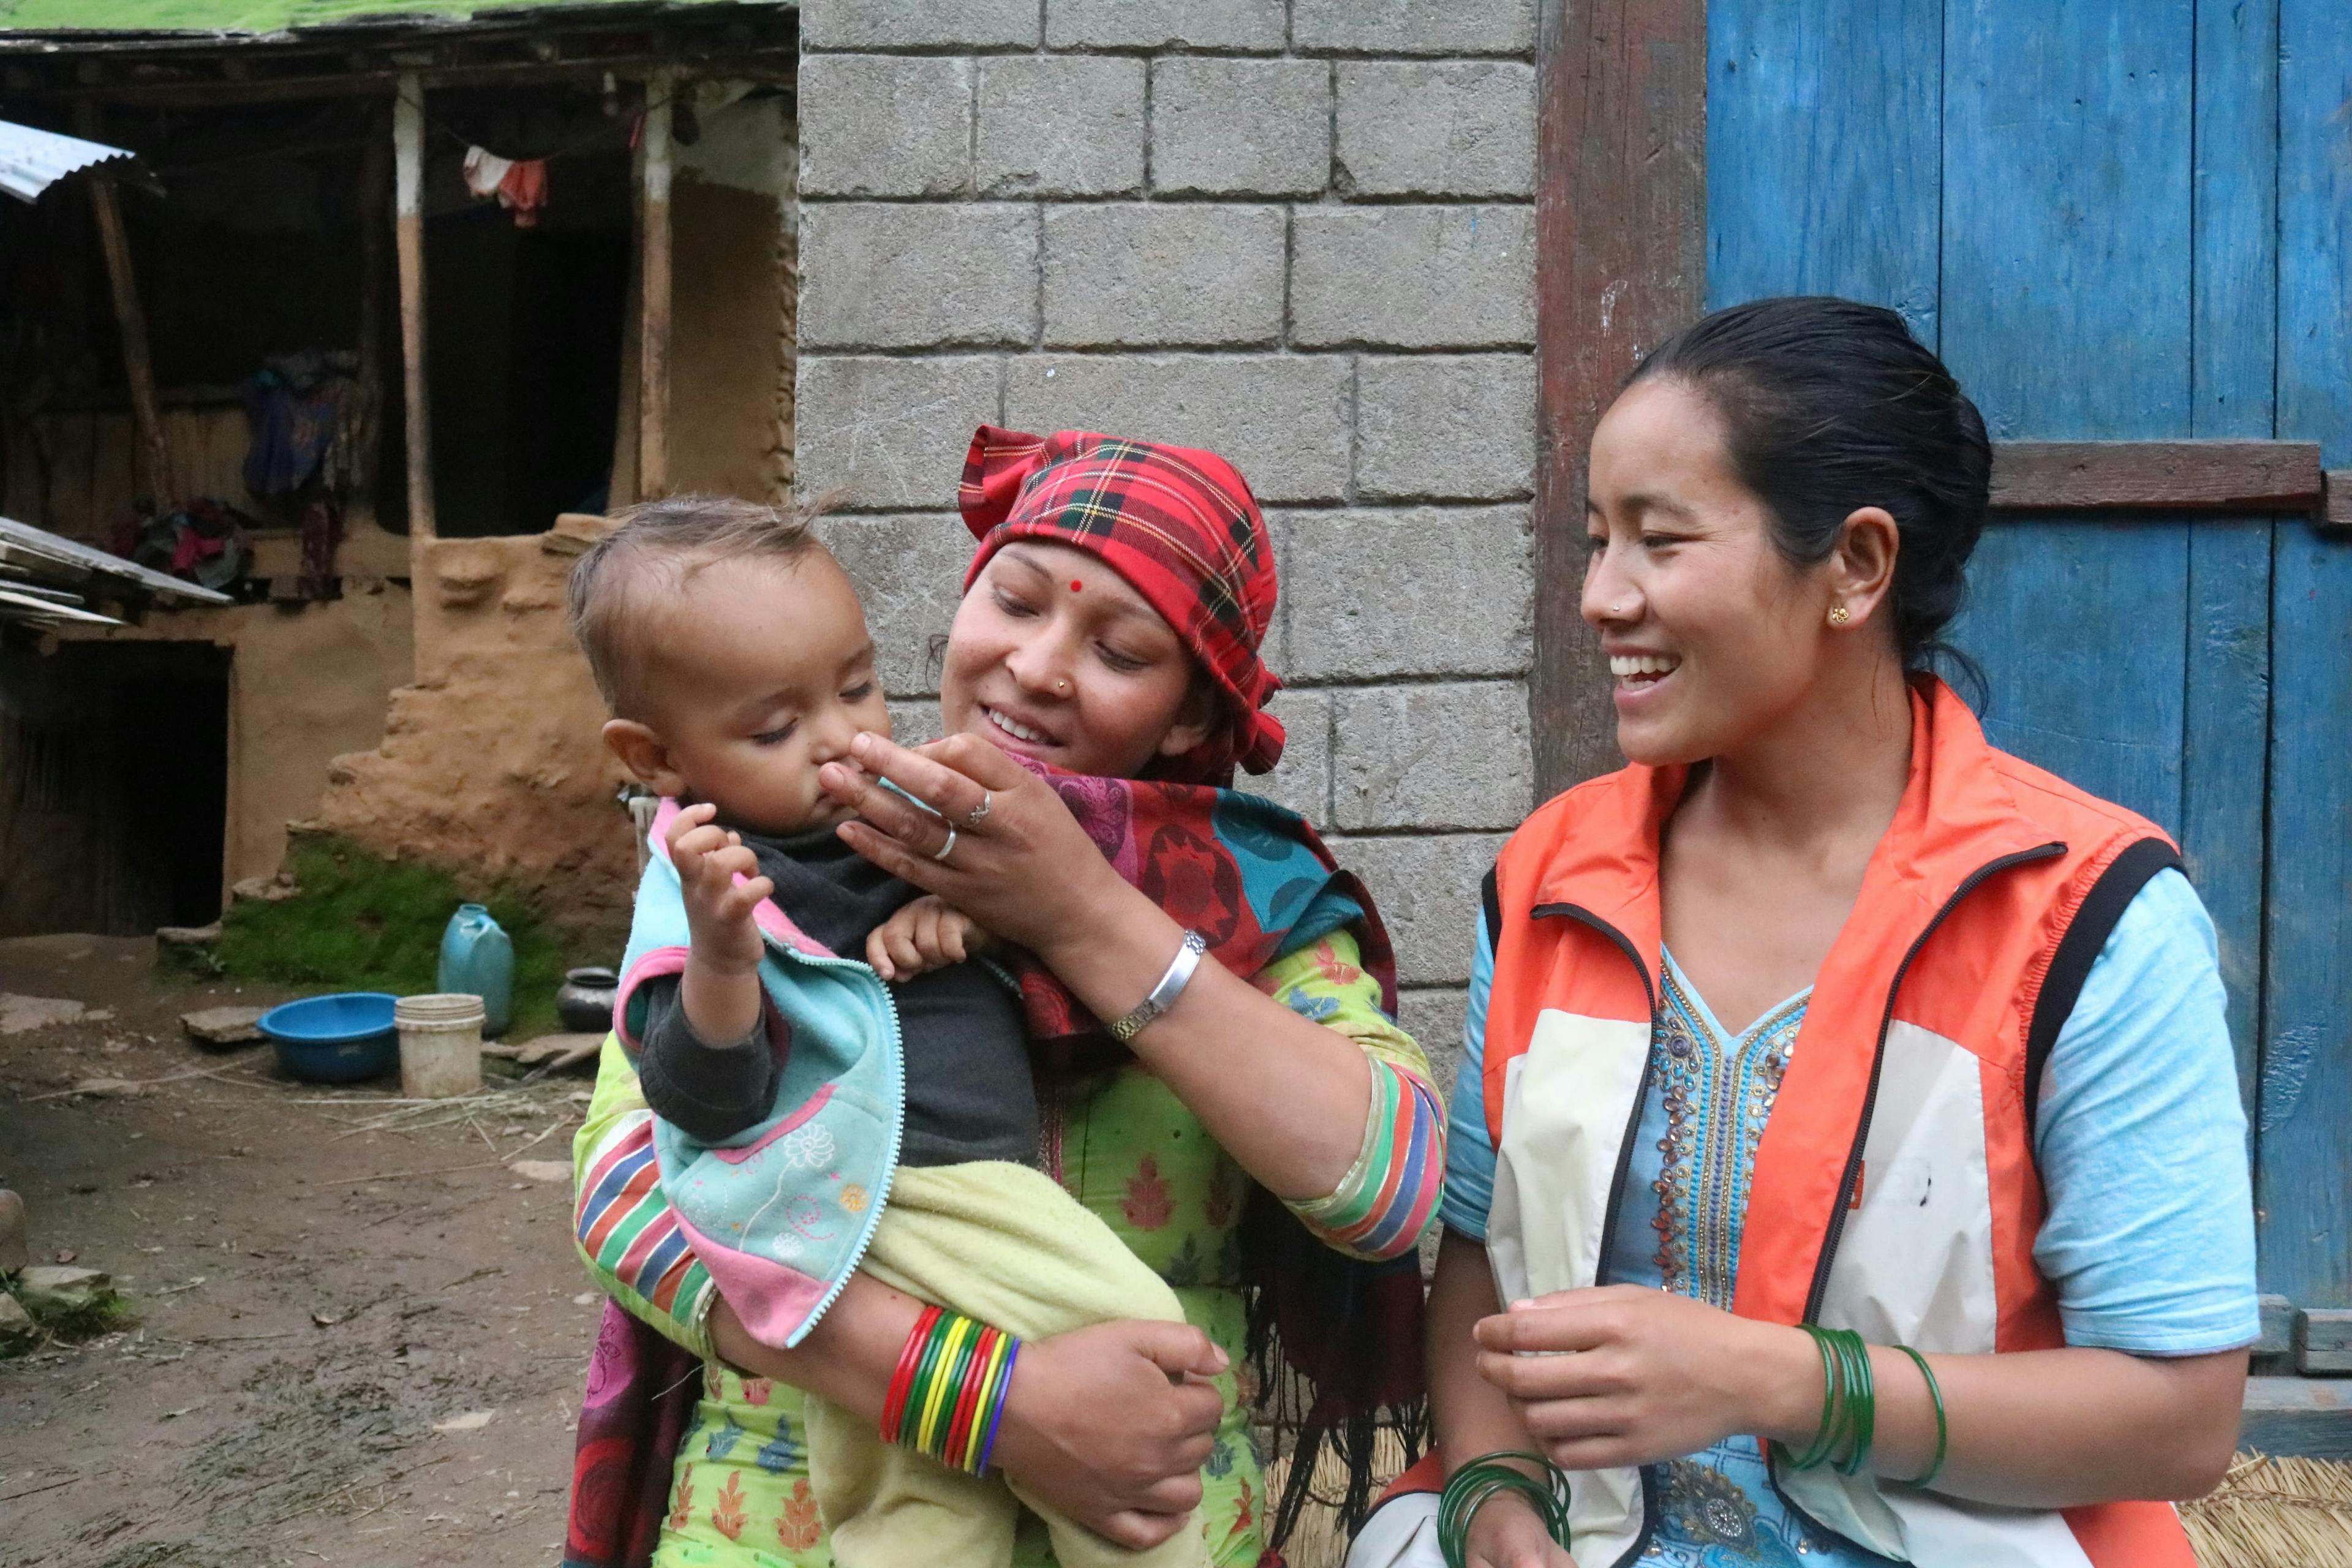 Auf dem Bild ist unsere Gesundheitshelferin Gyan zu sehen. Sie guckt ein Baby an, das auf dem Arm seiner Mutter sitzt, und lächelt das Baby an. Alle drei stehen im Freien vor einer Hütte und sind bunt gekleidet.